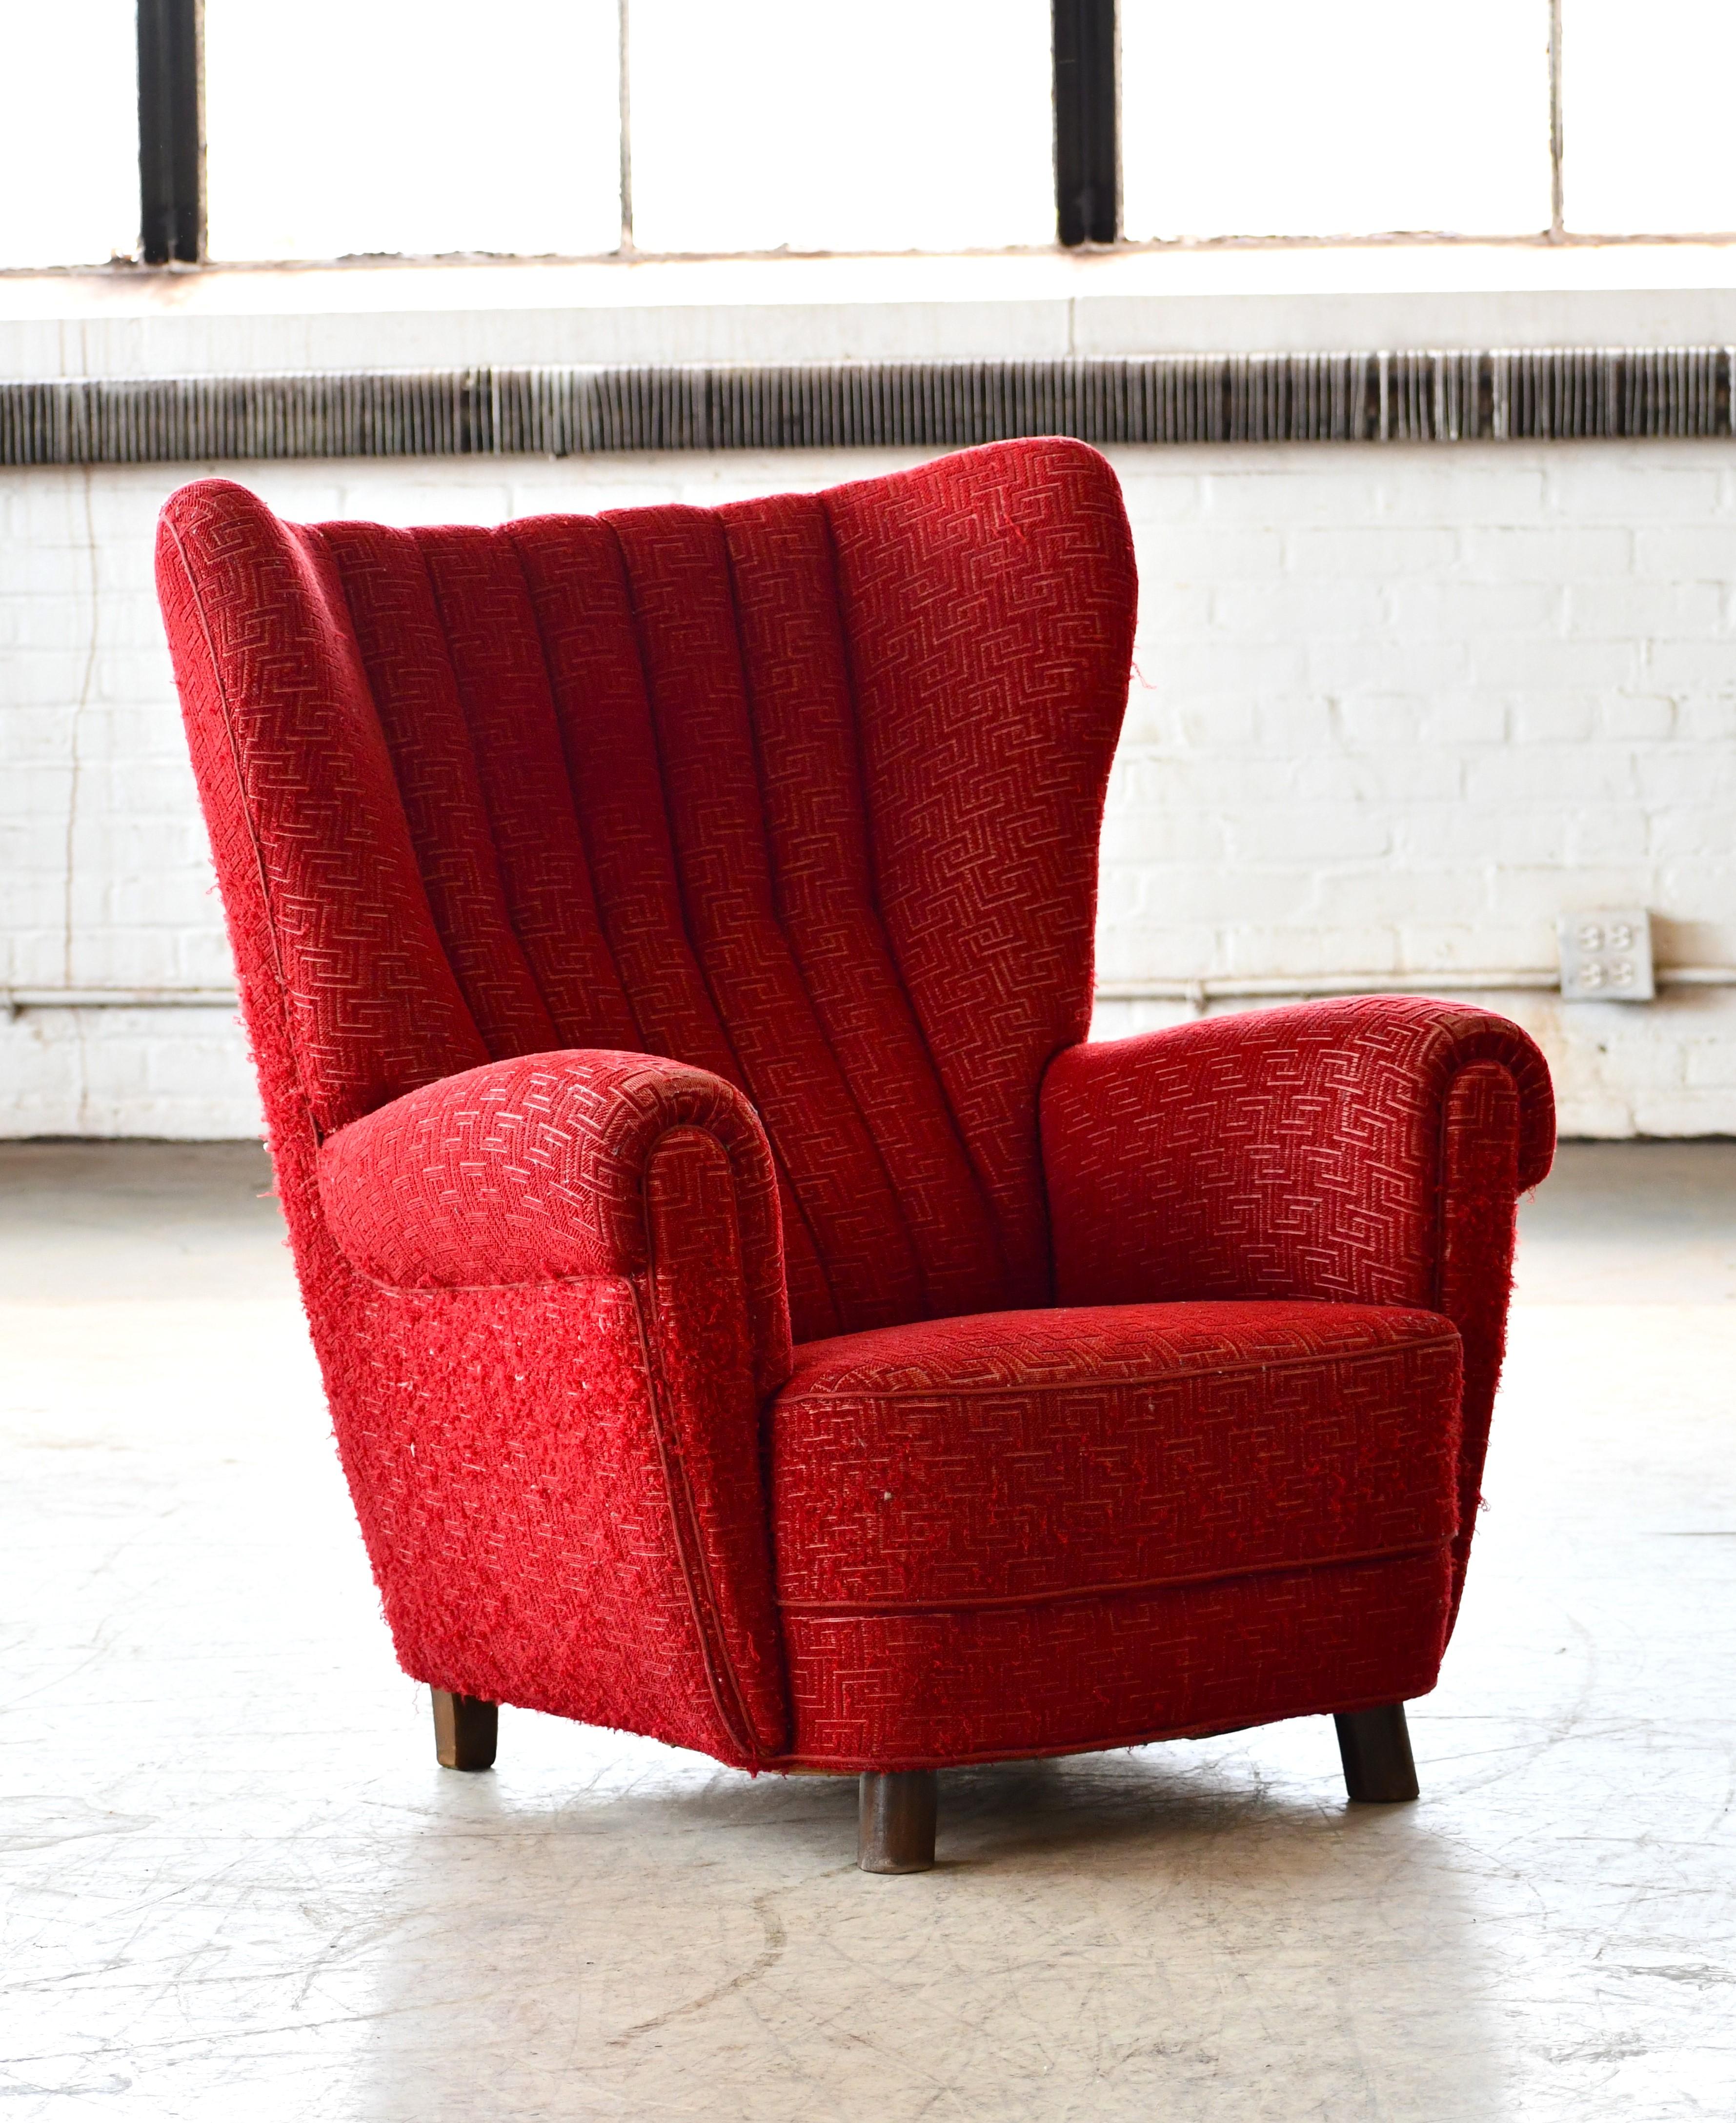 Sehr charmanter Sessel mit hoher Rückenlehne aus den 1940er Jahren im Stil von Mogens Lassen mit sehr skulpturaler, organischer Form und harmonischen Proportionen. Die leicht gespreizten Vorderbeine sind typisch für Lassen-Designs. Gestellt auf